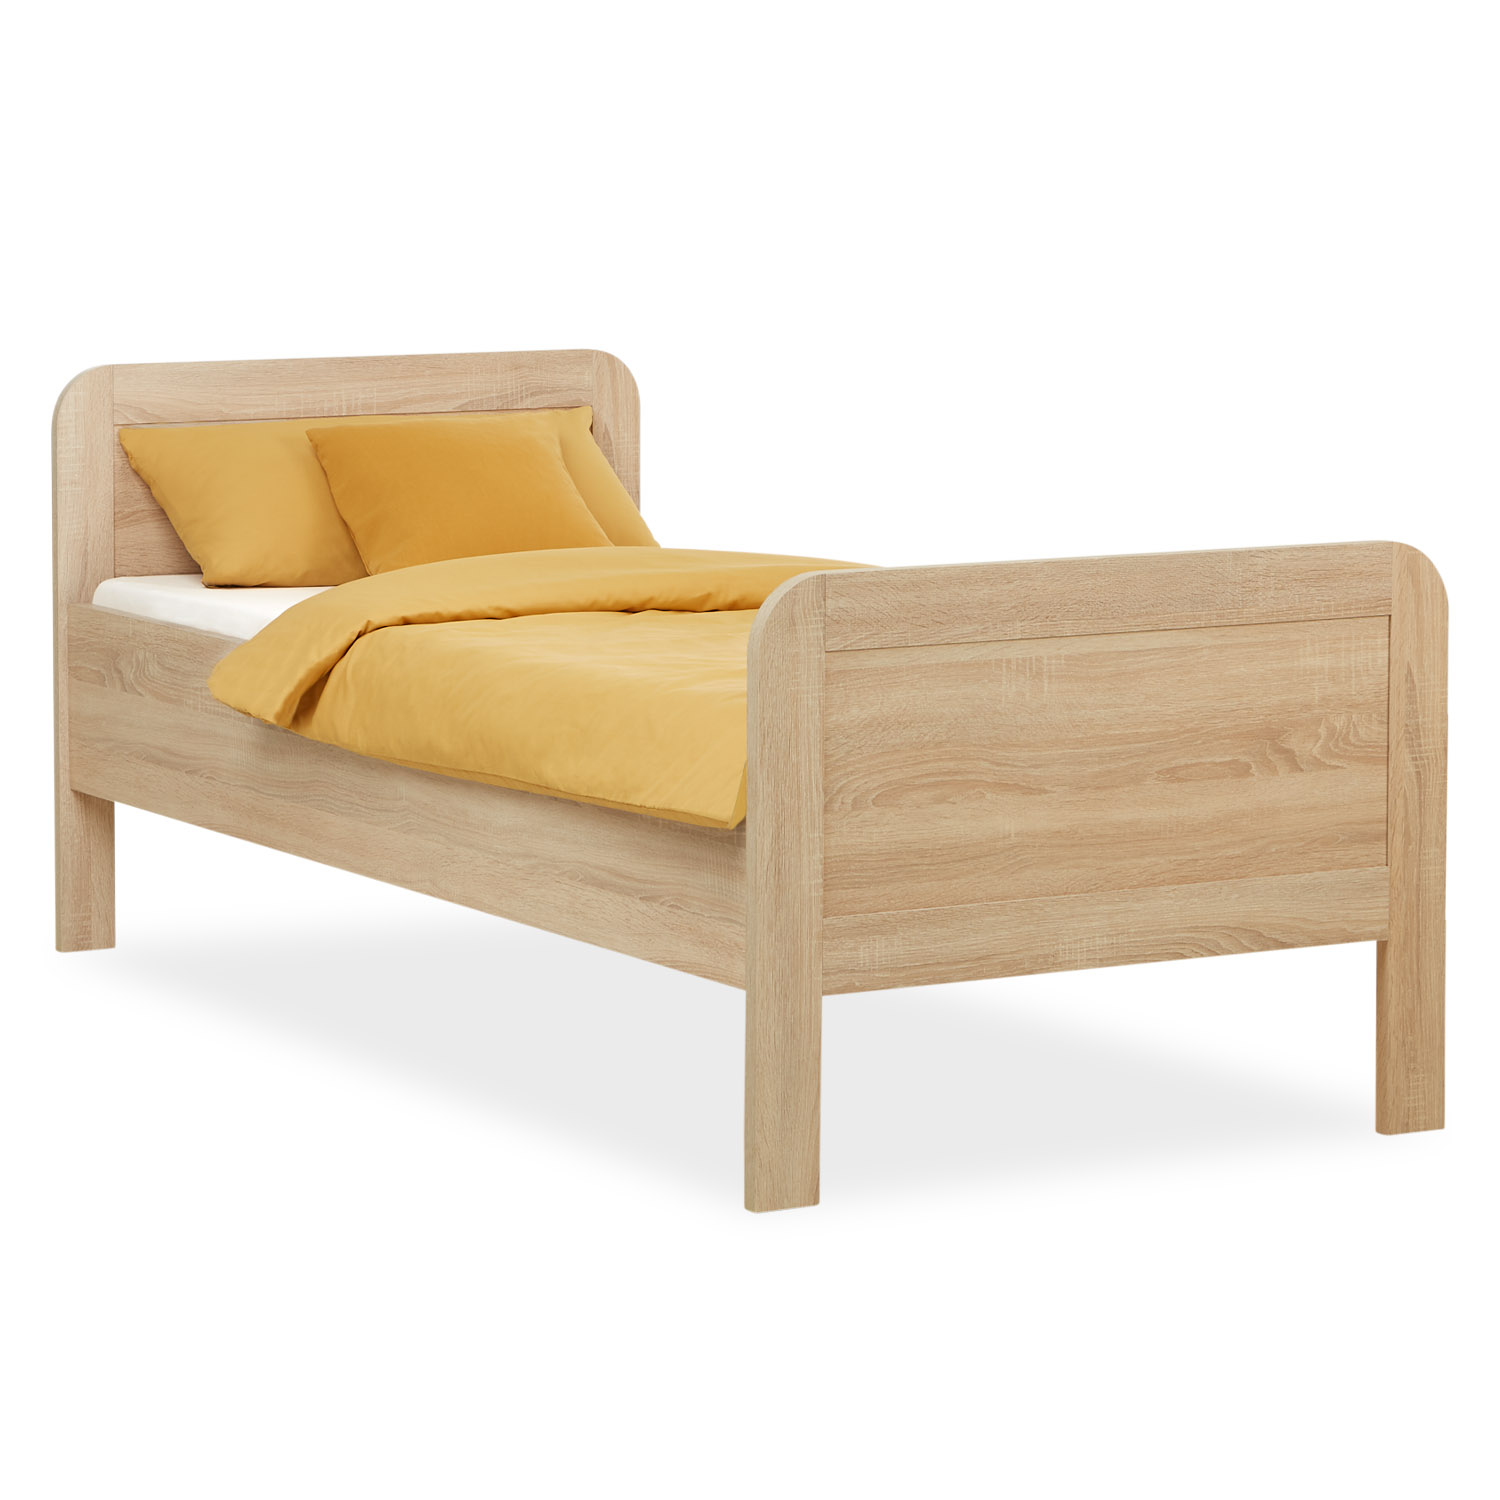 Comfort bed 90x200 Senior bed White Oak Adjustable height Wooden Single bed Bed frame